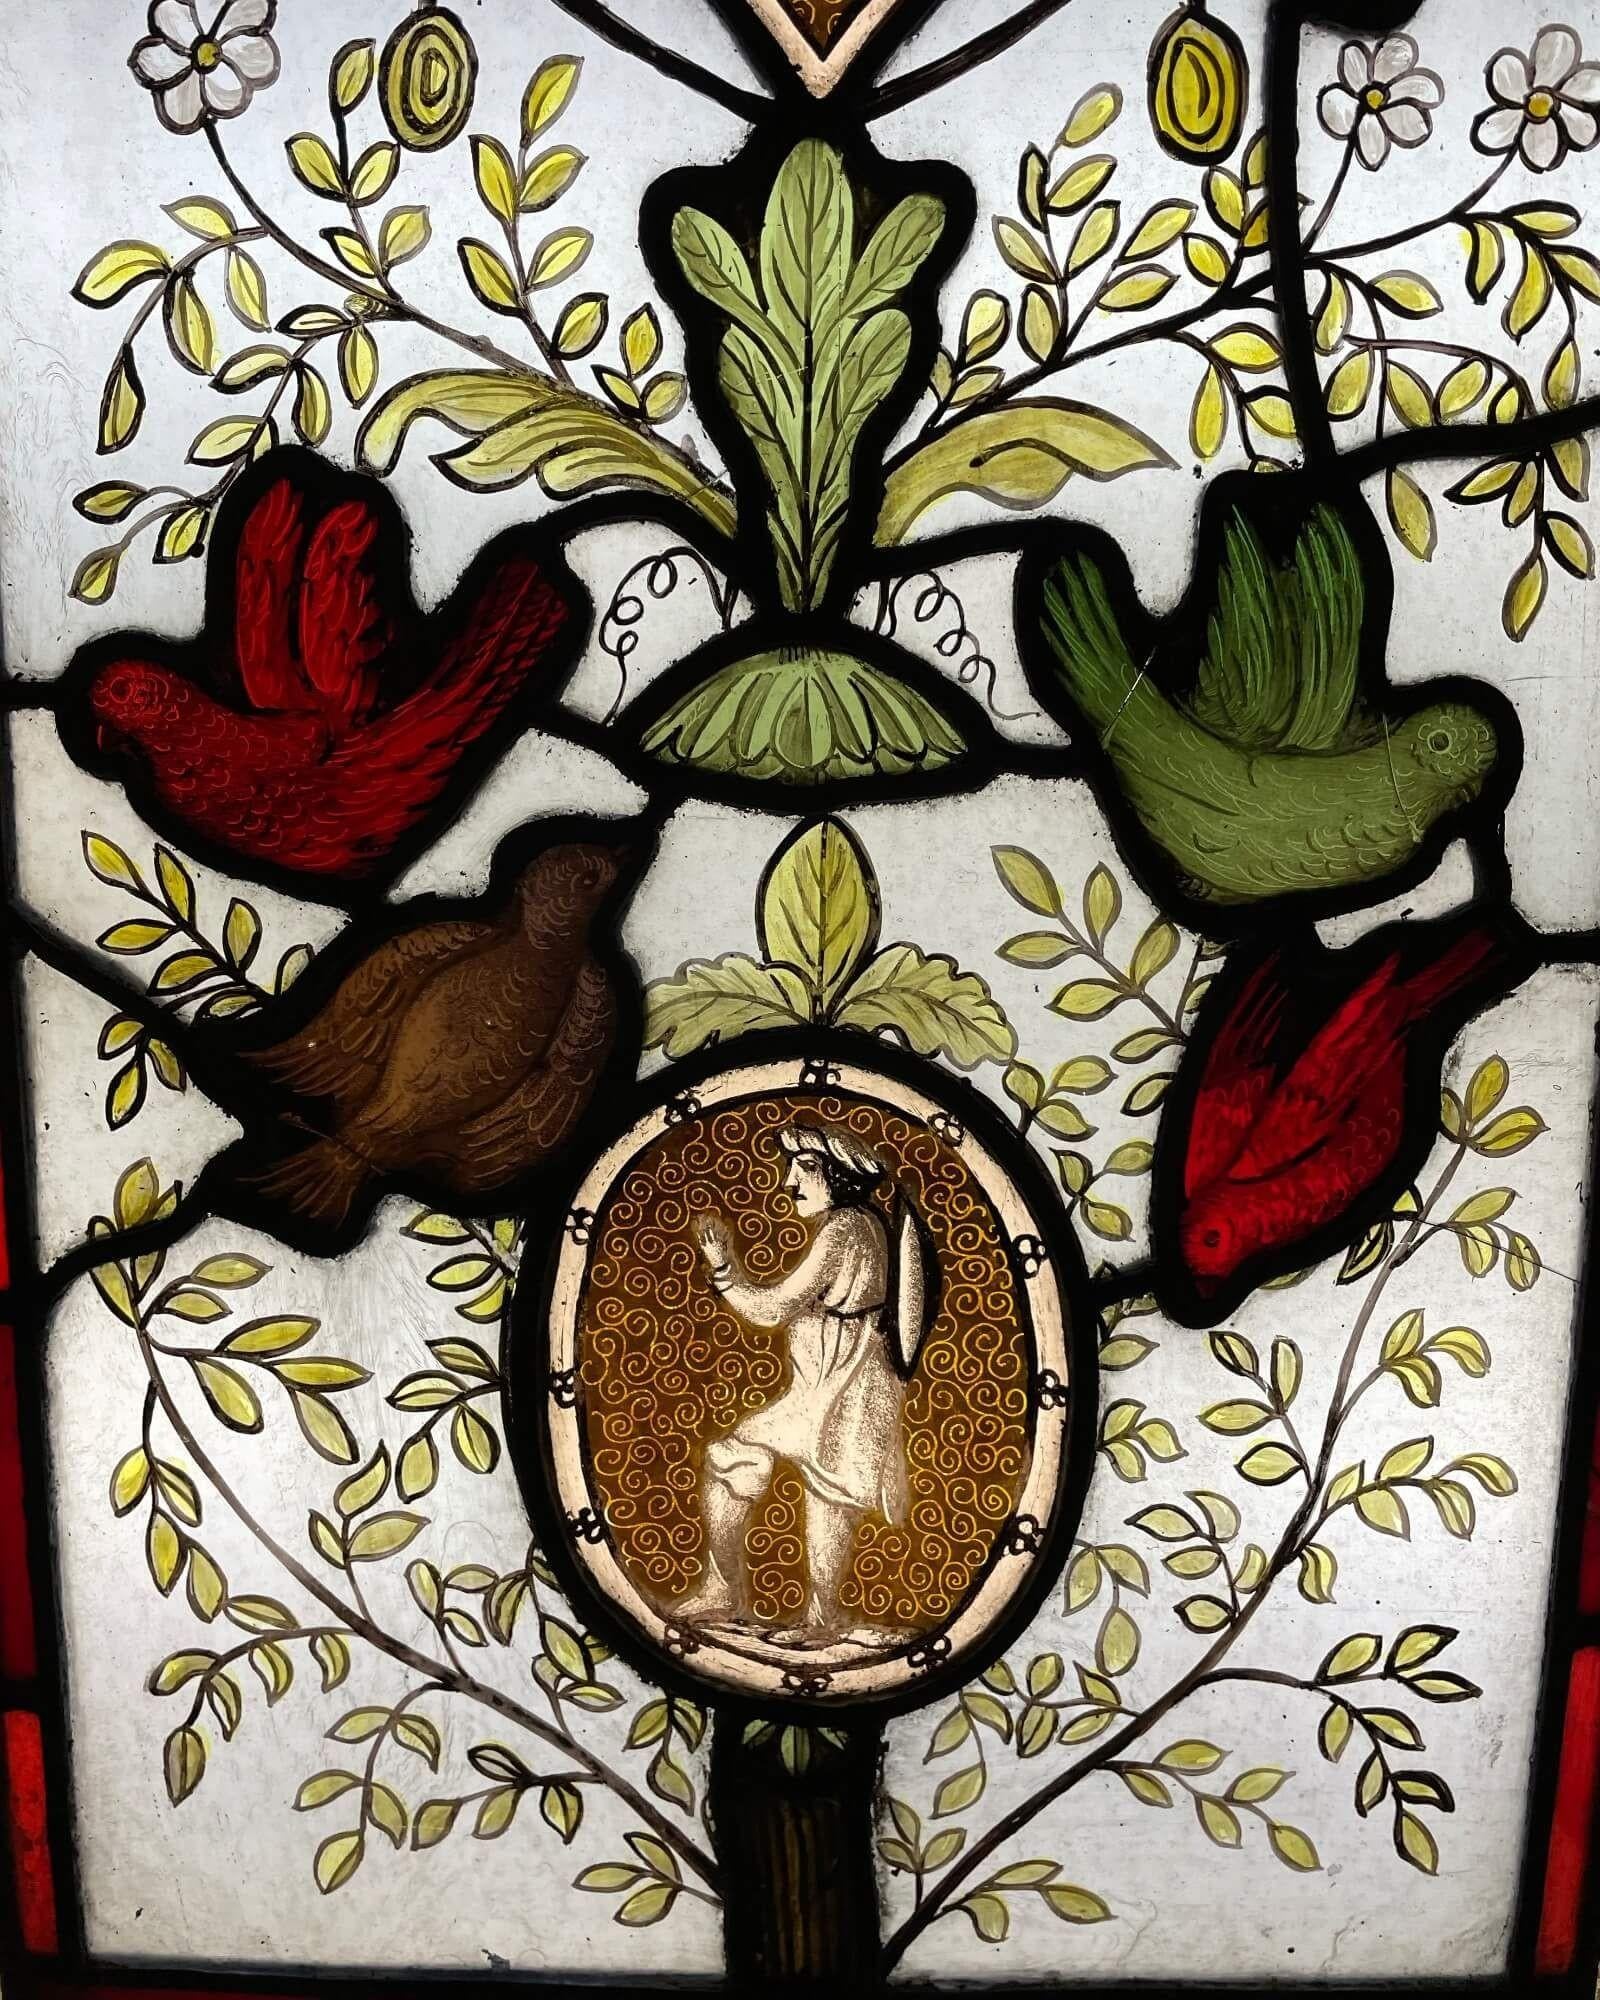 Ein schönes Buntglasfenster aus der viktorianischen Ära, das eine Szene im Stil eines Lebensbaums darstellt. Wir verkaufen auch zwei andere Tafeln mit einem ähnlichen Thema.

Diese antike Glasmalerei aus der Zeit um 1880 ist in Farbe und Faszination